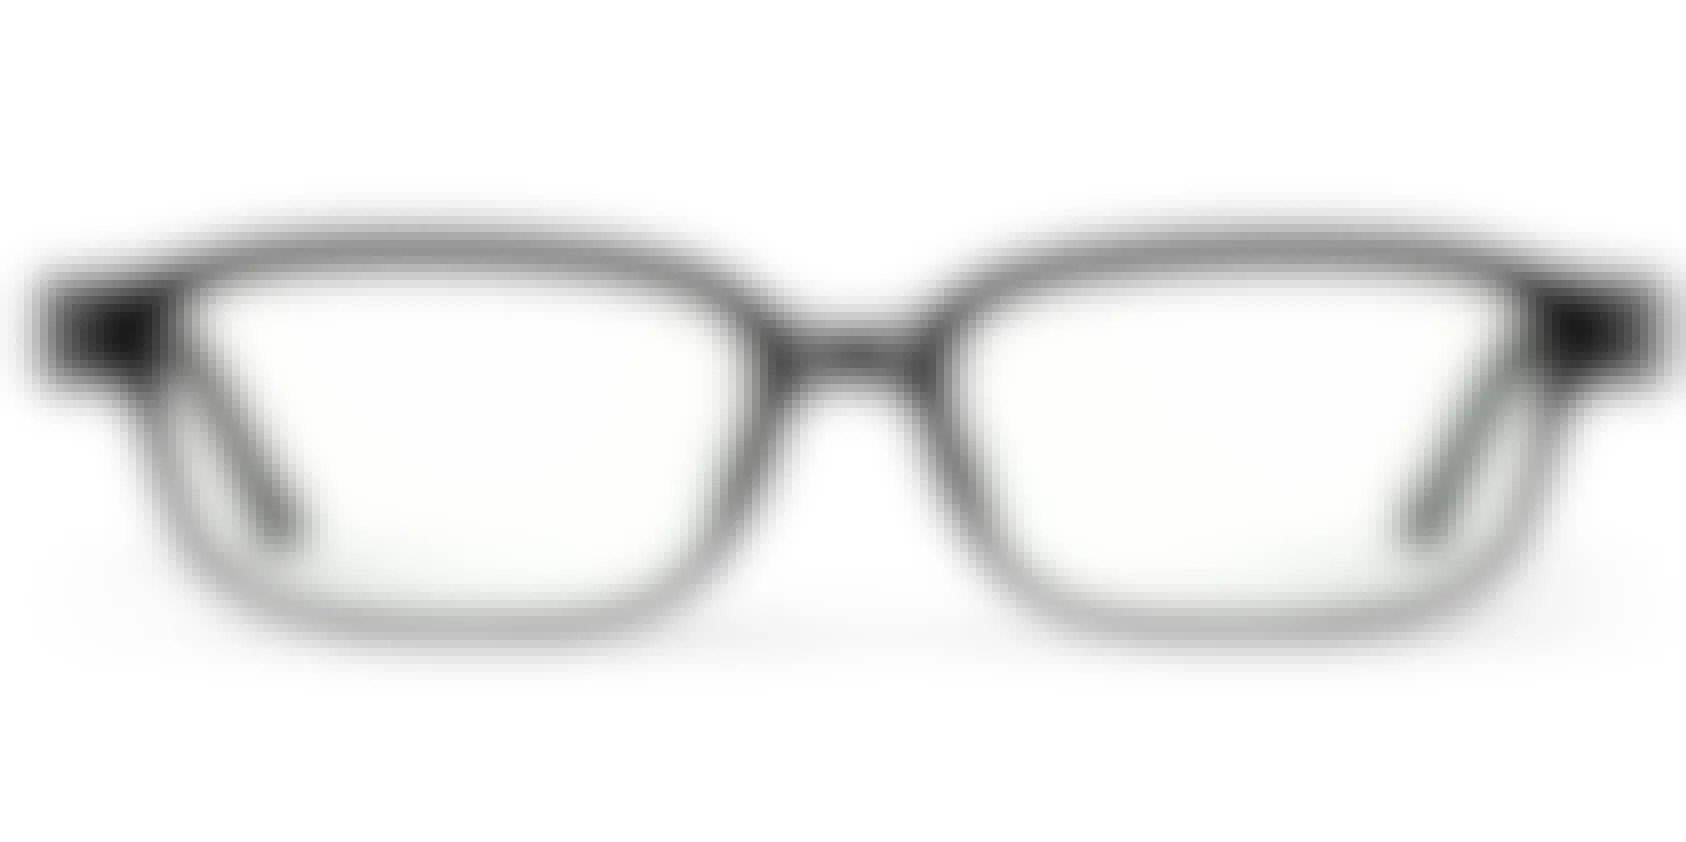 Black glasses frames on a white background